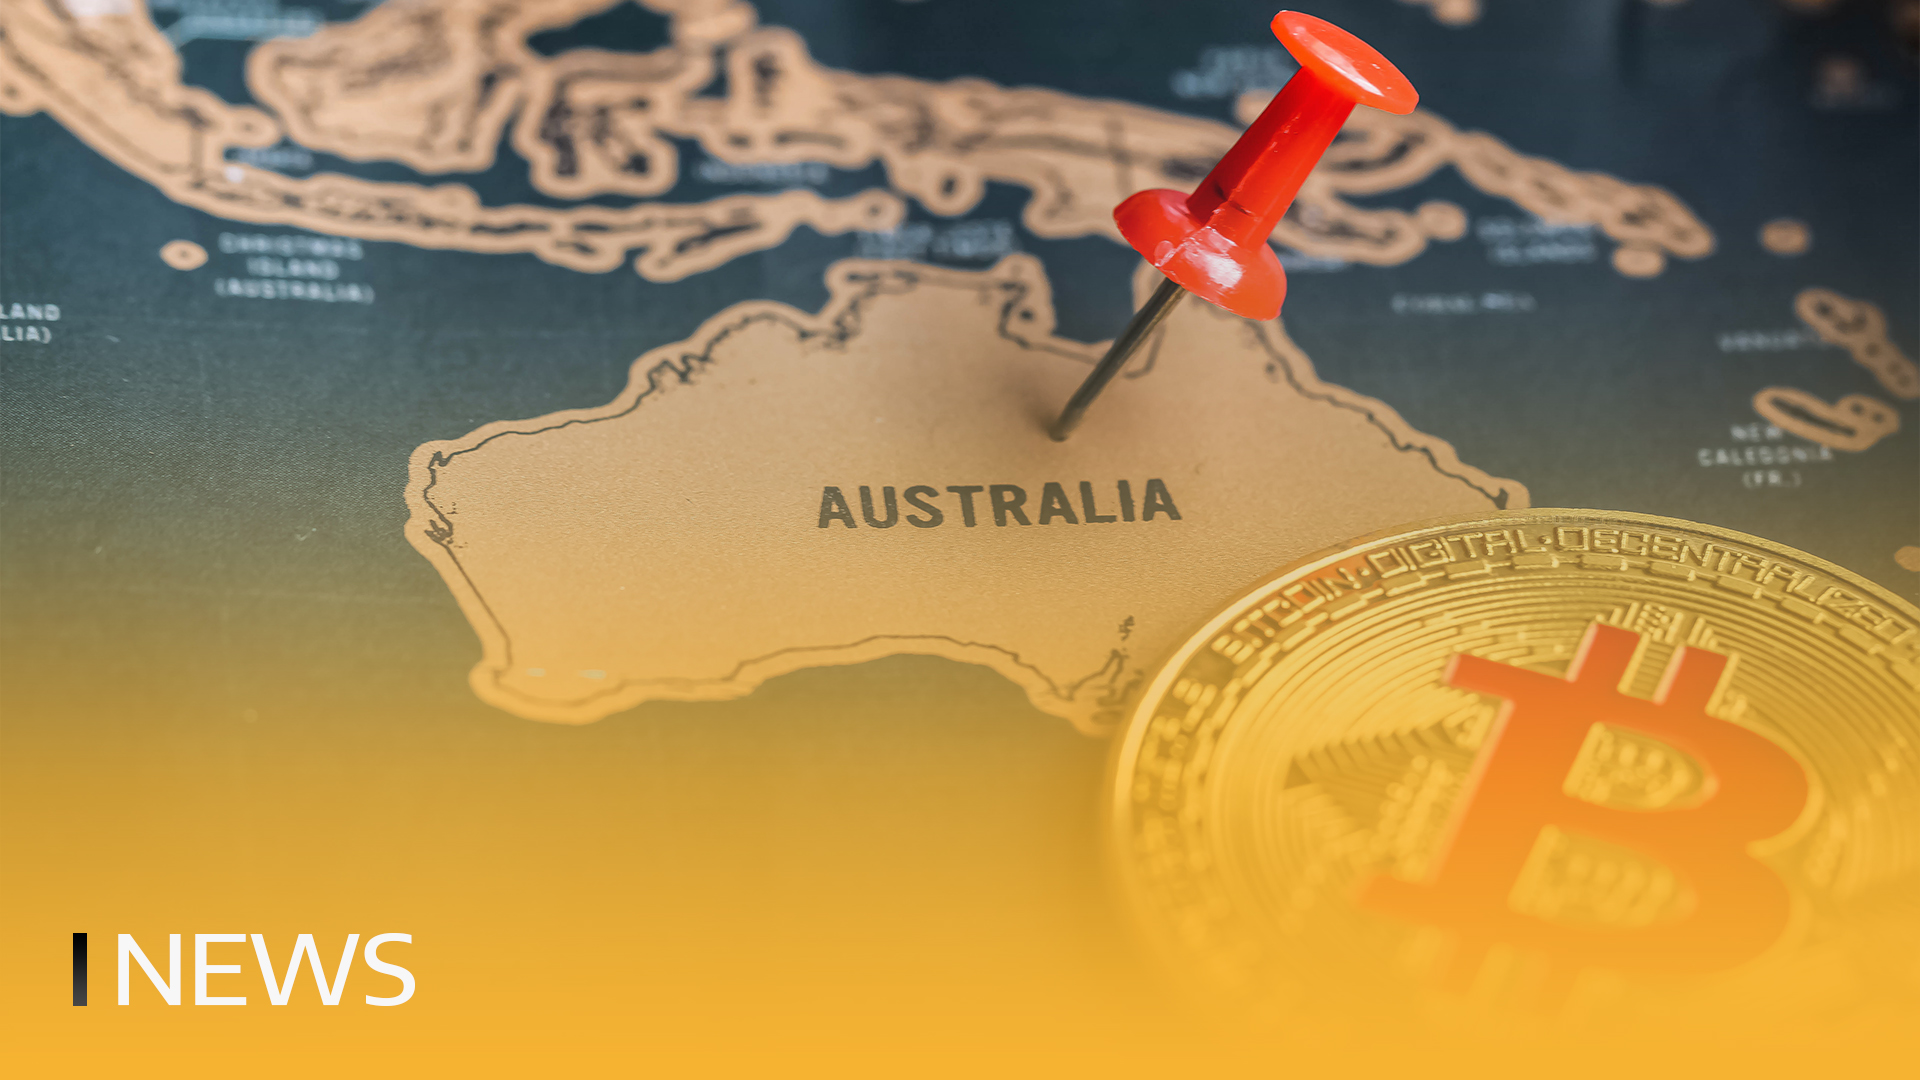 Les distributeurs automatiques de bitcoins atteignent le nombre de 1 000 en Australie